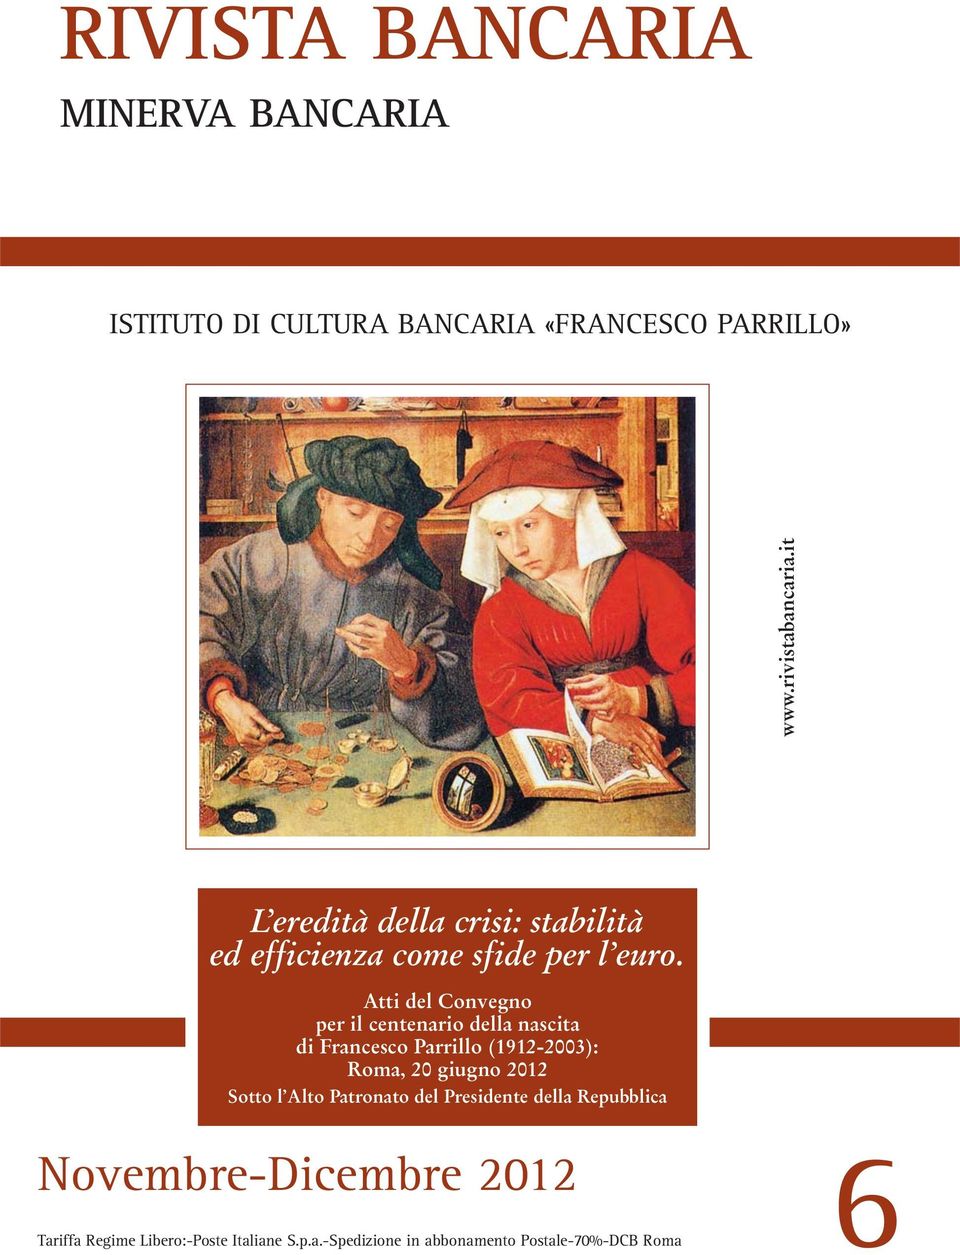 Atti del Convegno per il centenario della nascita di Francesco Parrillo (1912-2003): Roma, 20 giugno 2012 Sotto l